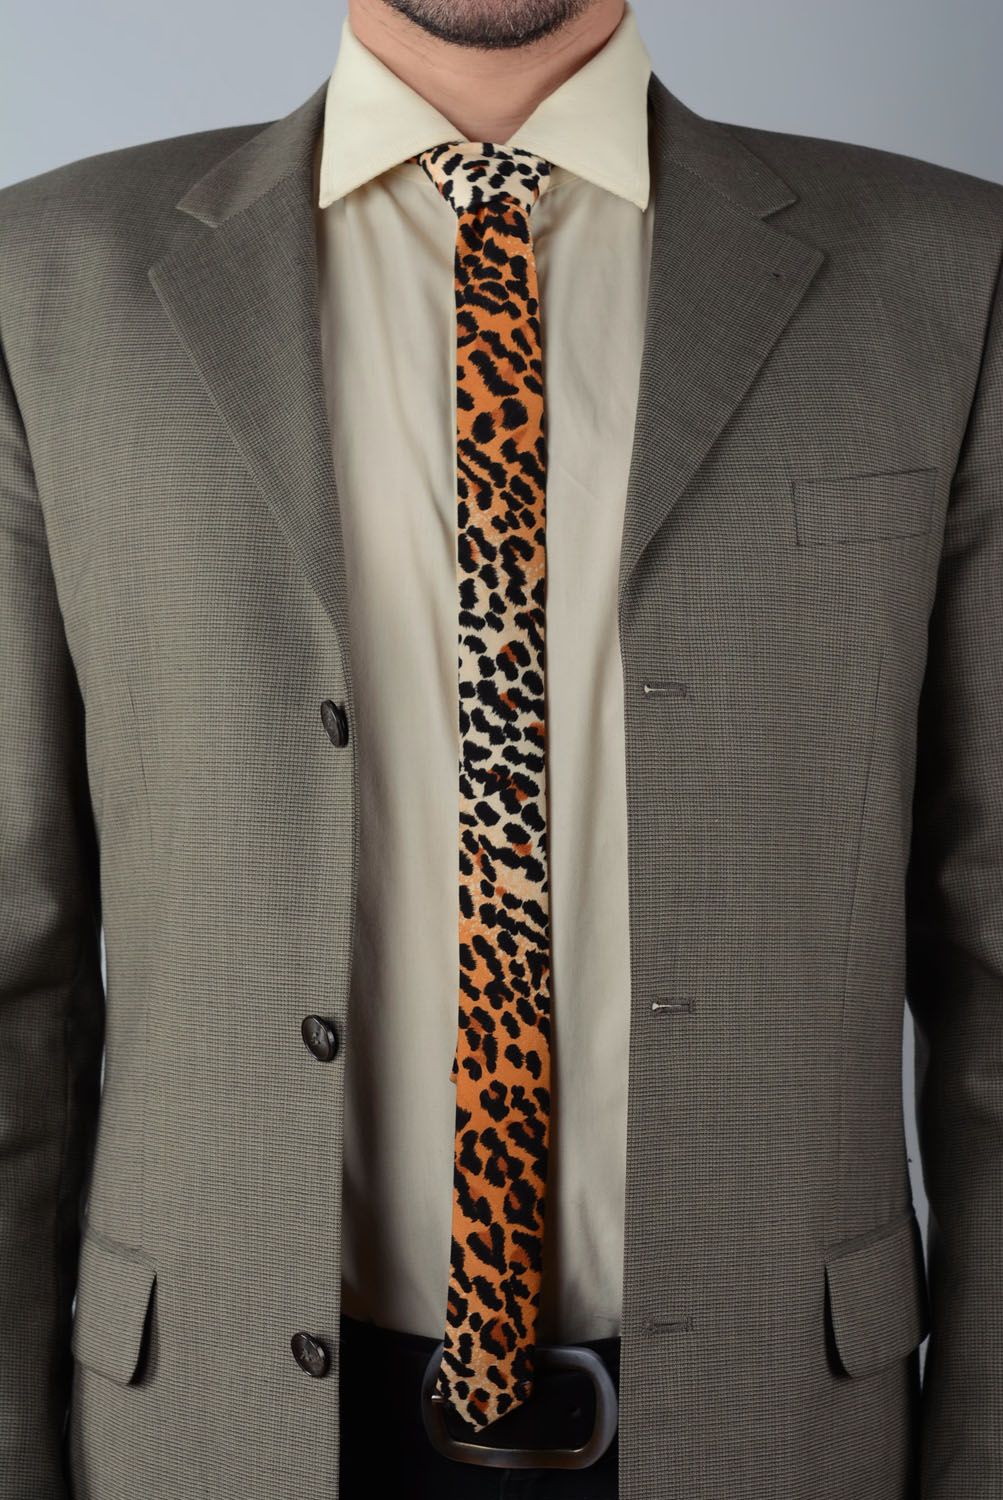 Corbata original de color de leopardo de algodón foto 1